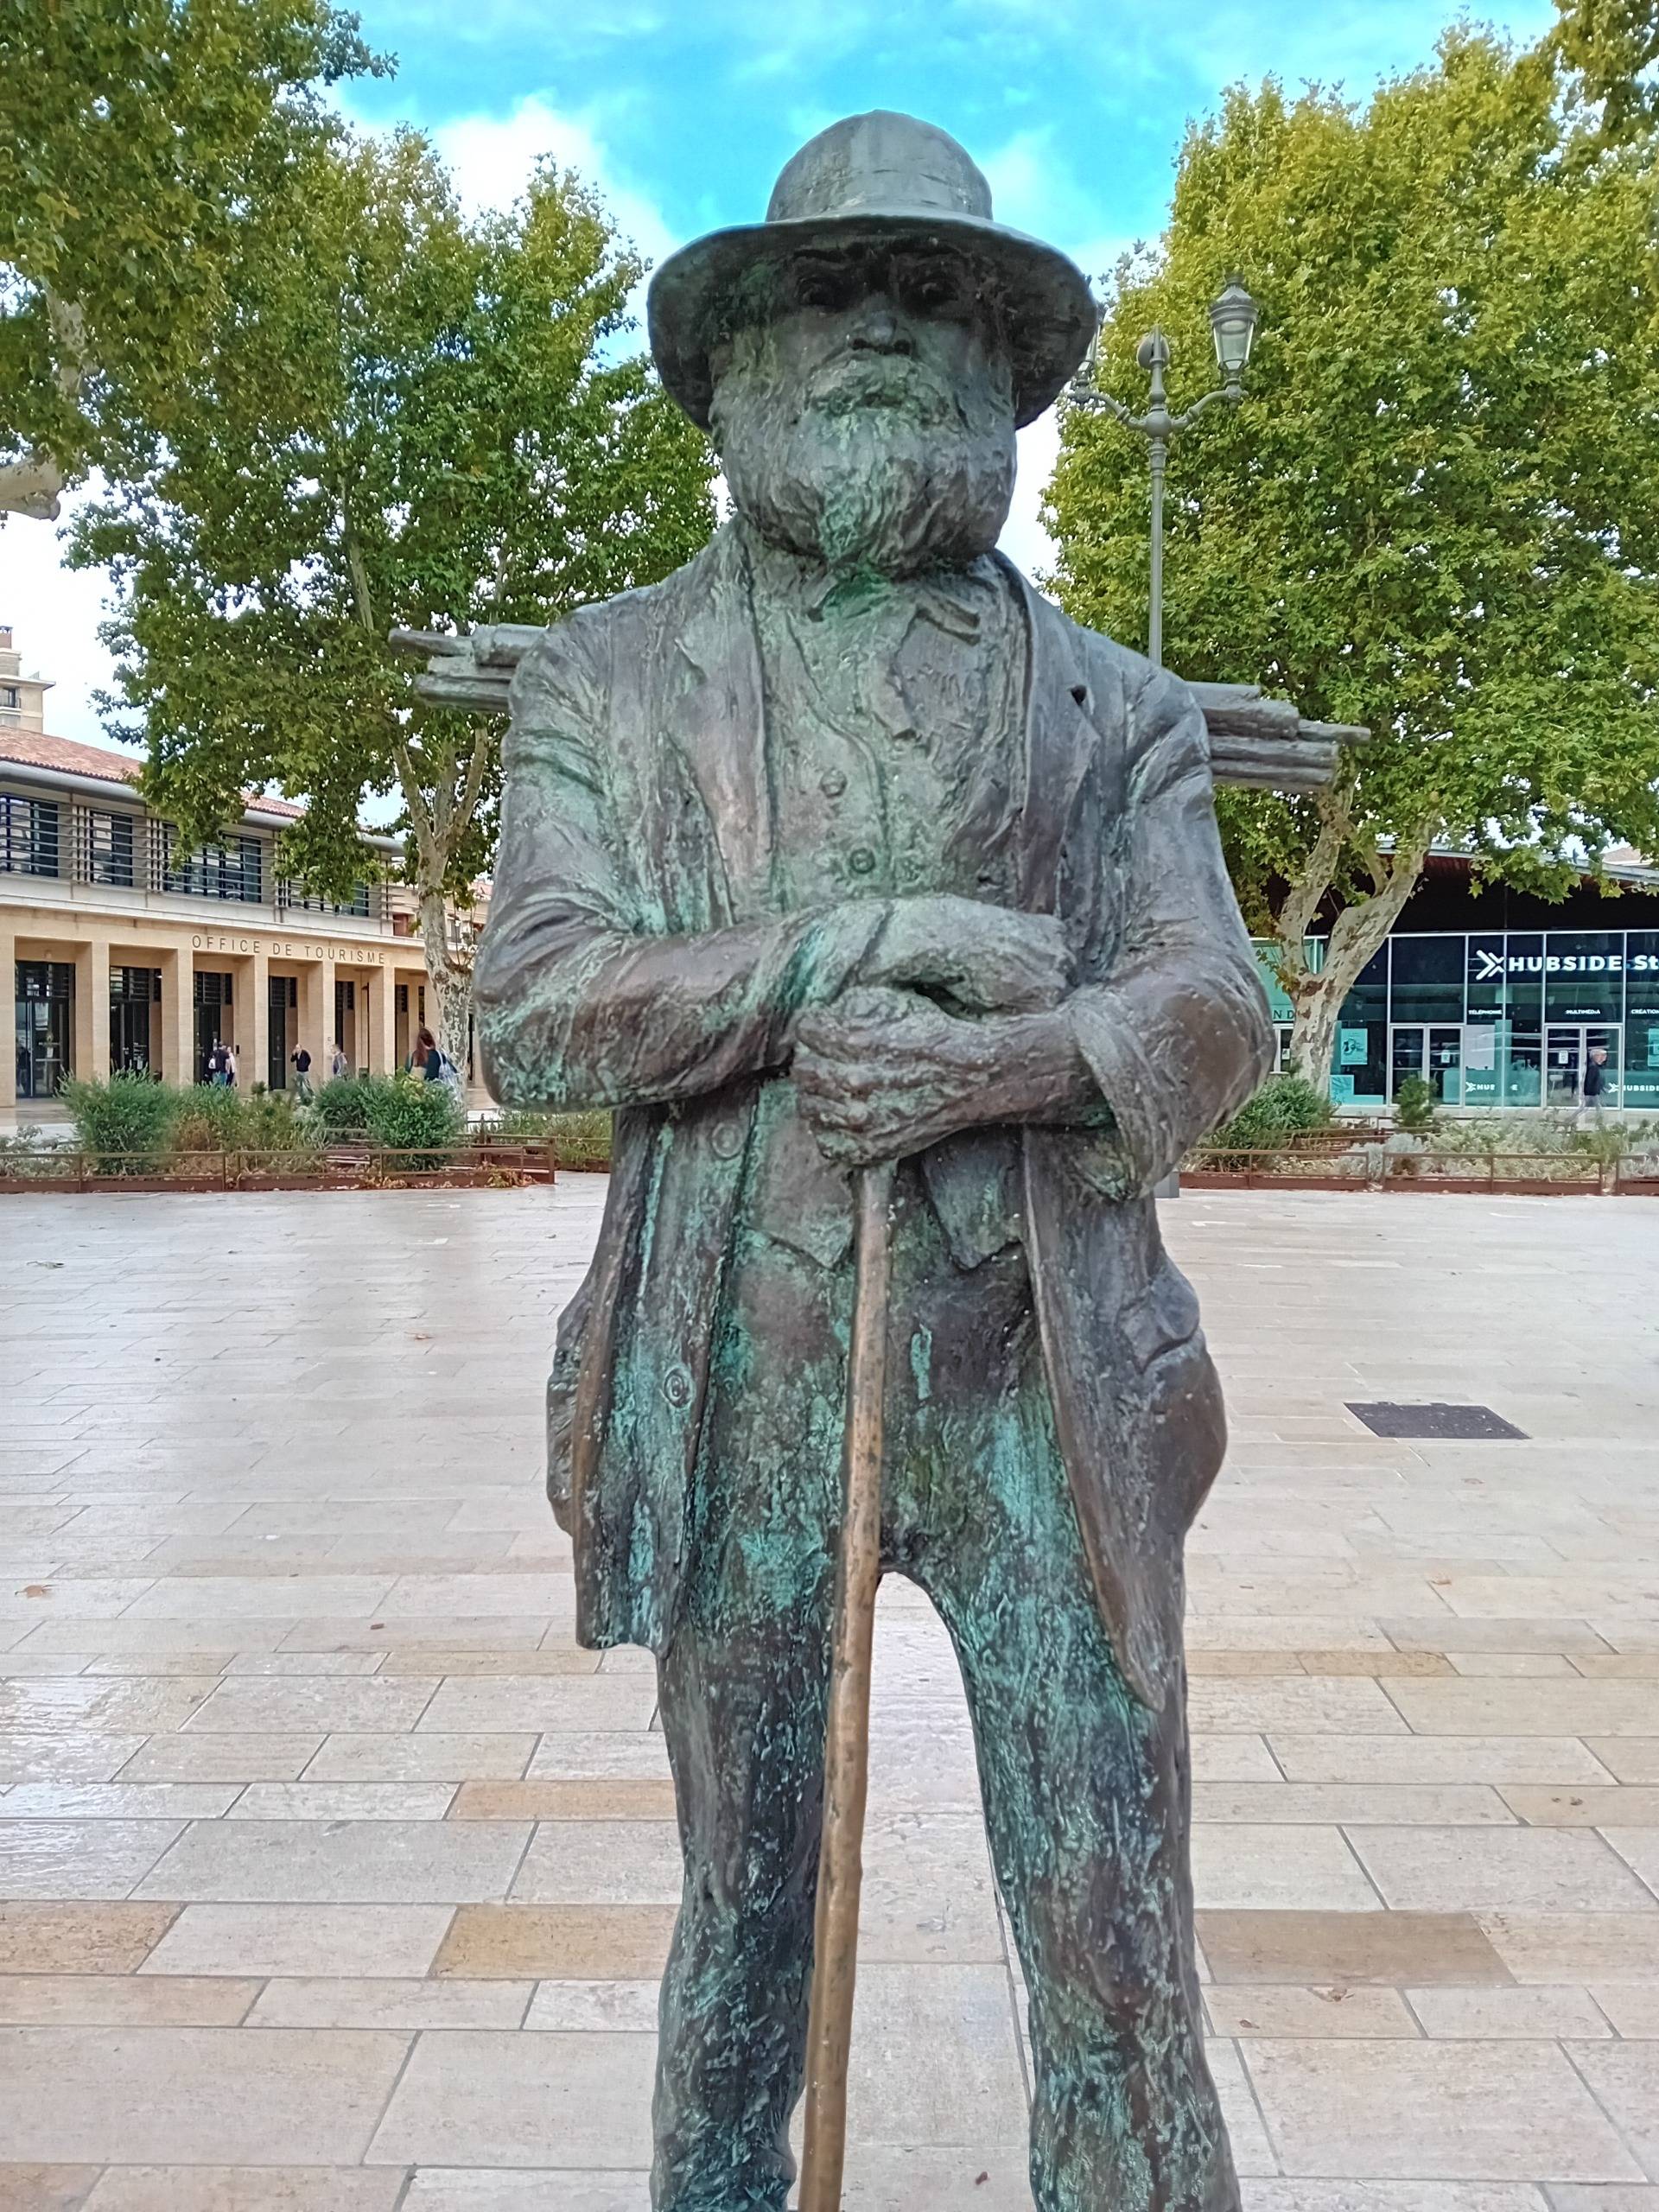 Cézanne's legacy in Aix-en-Provence